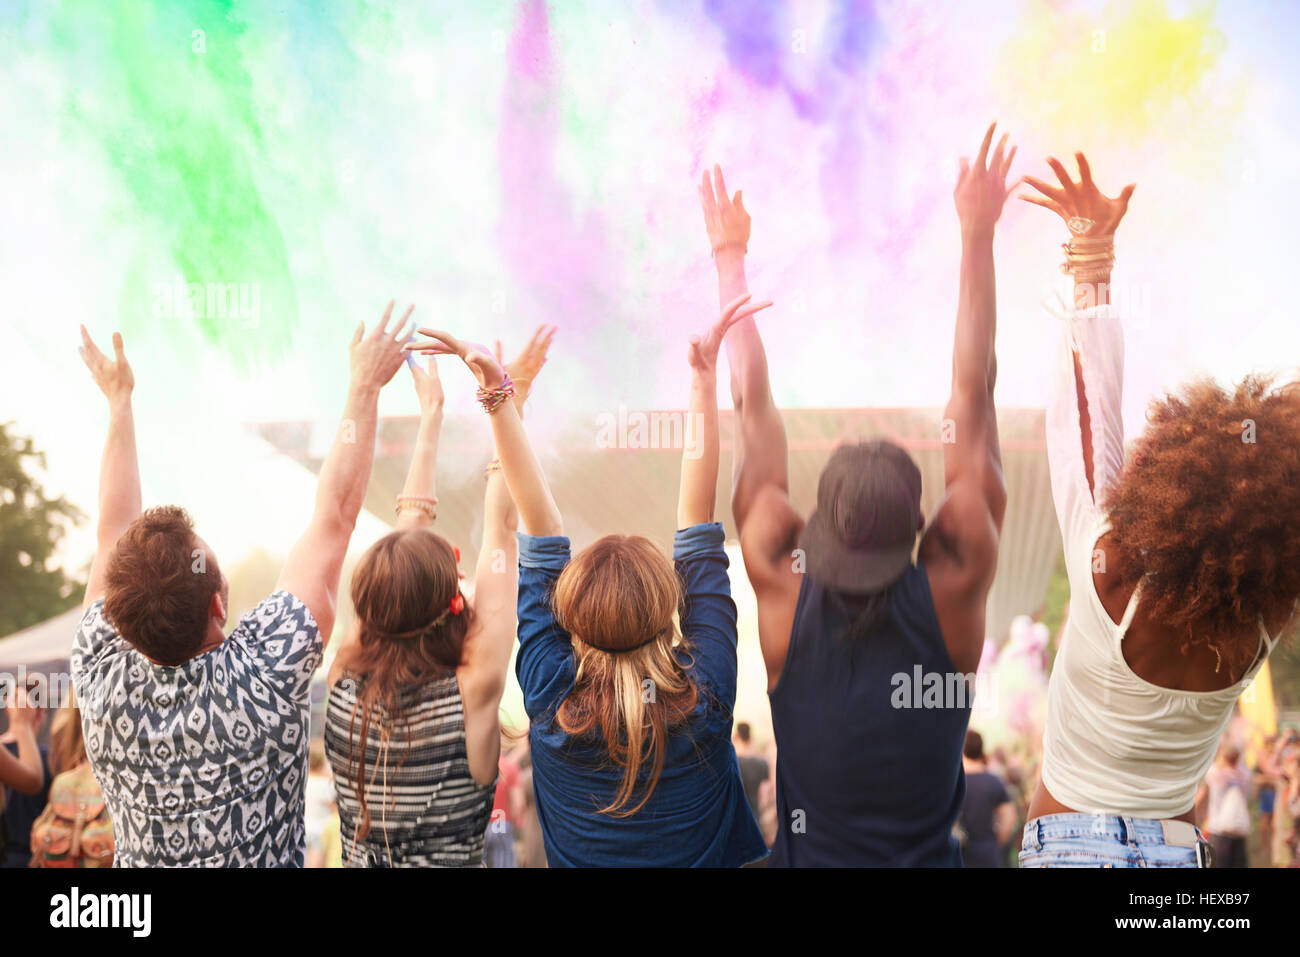 Gruppo di amici al festival, gettando colorati di vernice in polvere in aria, vista posteriore Foto Stock